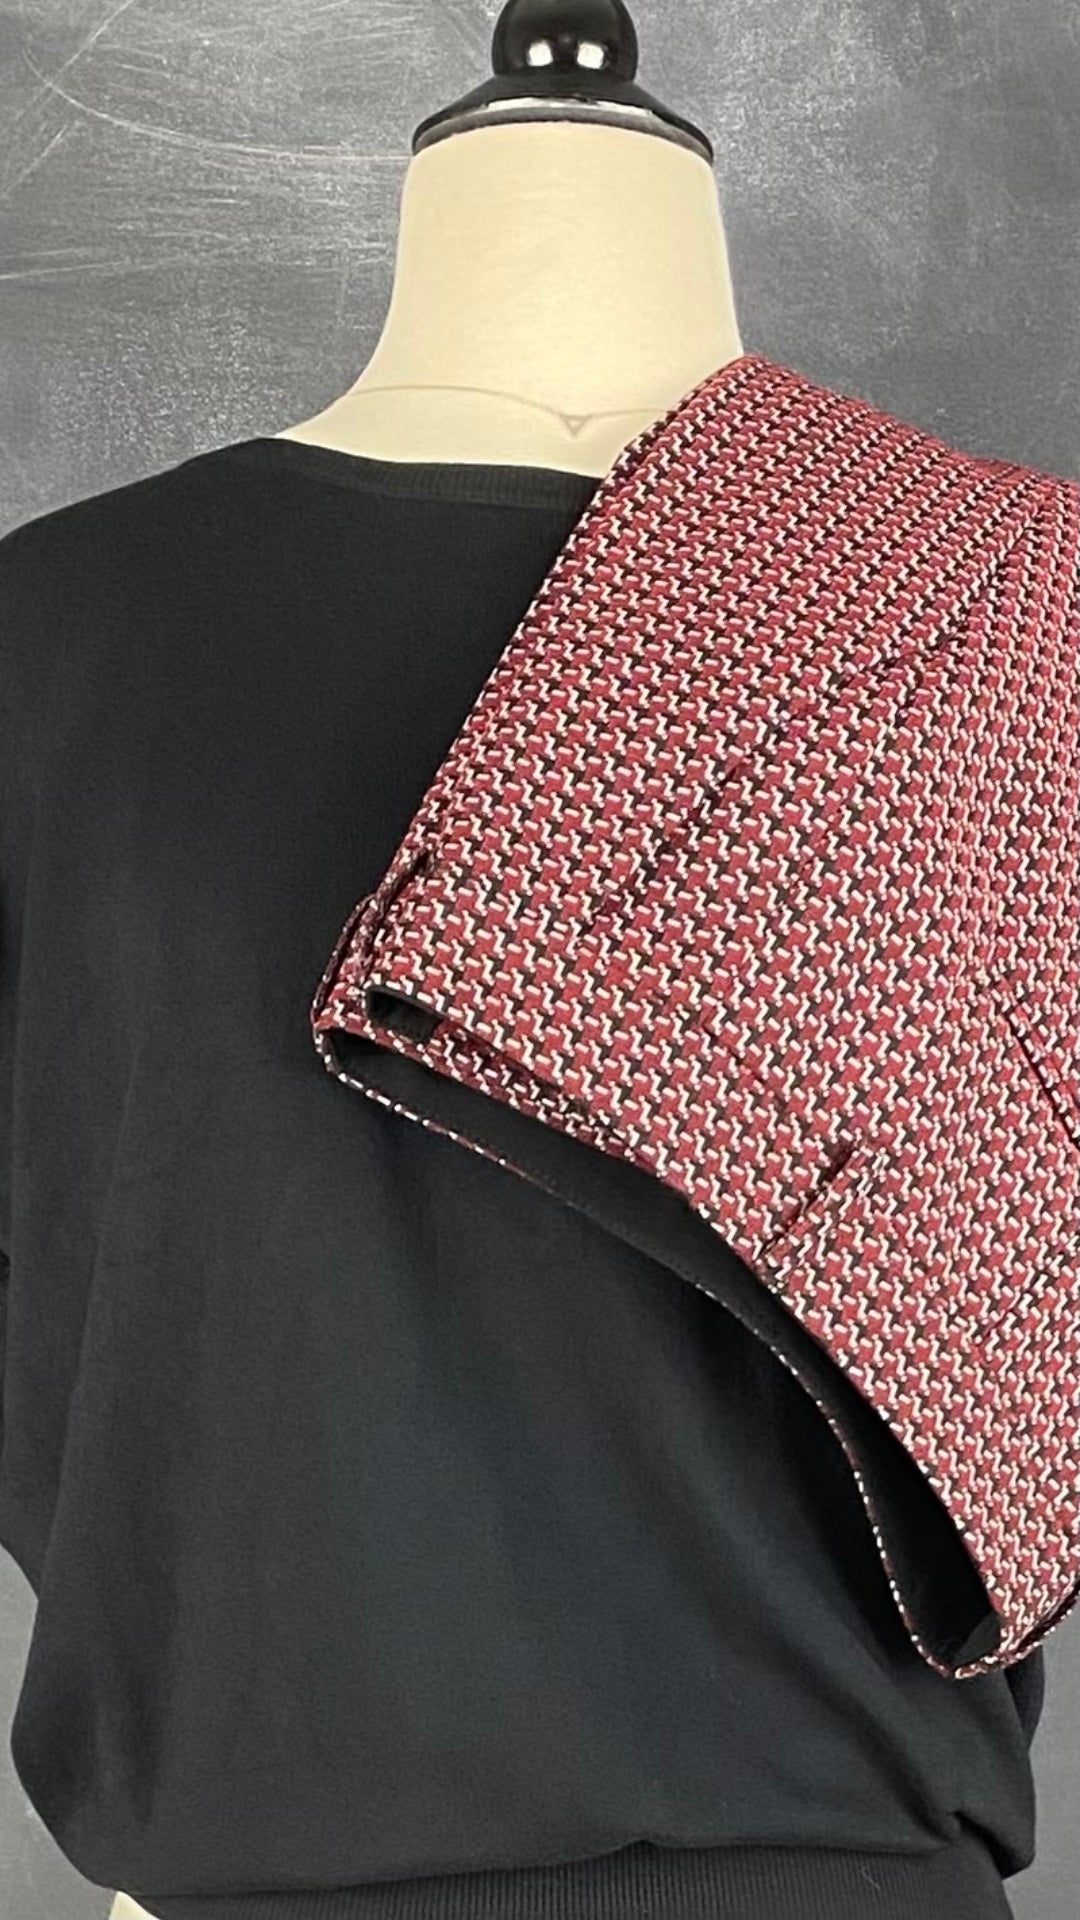 Pantalon coupe droite jacquard à motifs rouge, noir, blanc, Judith & Charles, taille 4. Vue de l'agencement avec le tricot noir Oui.